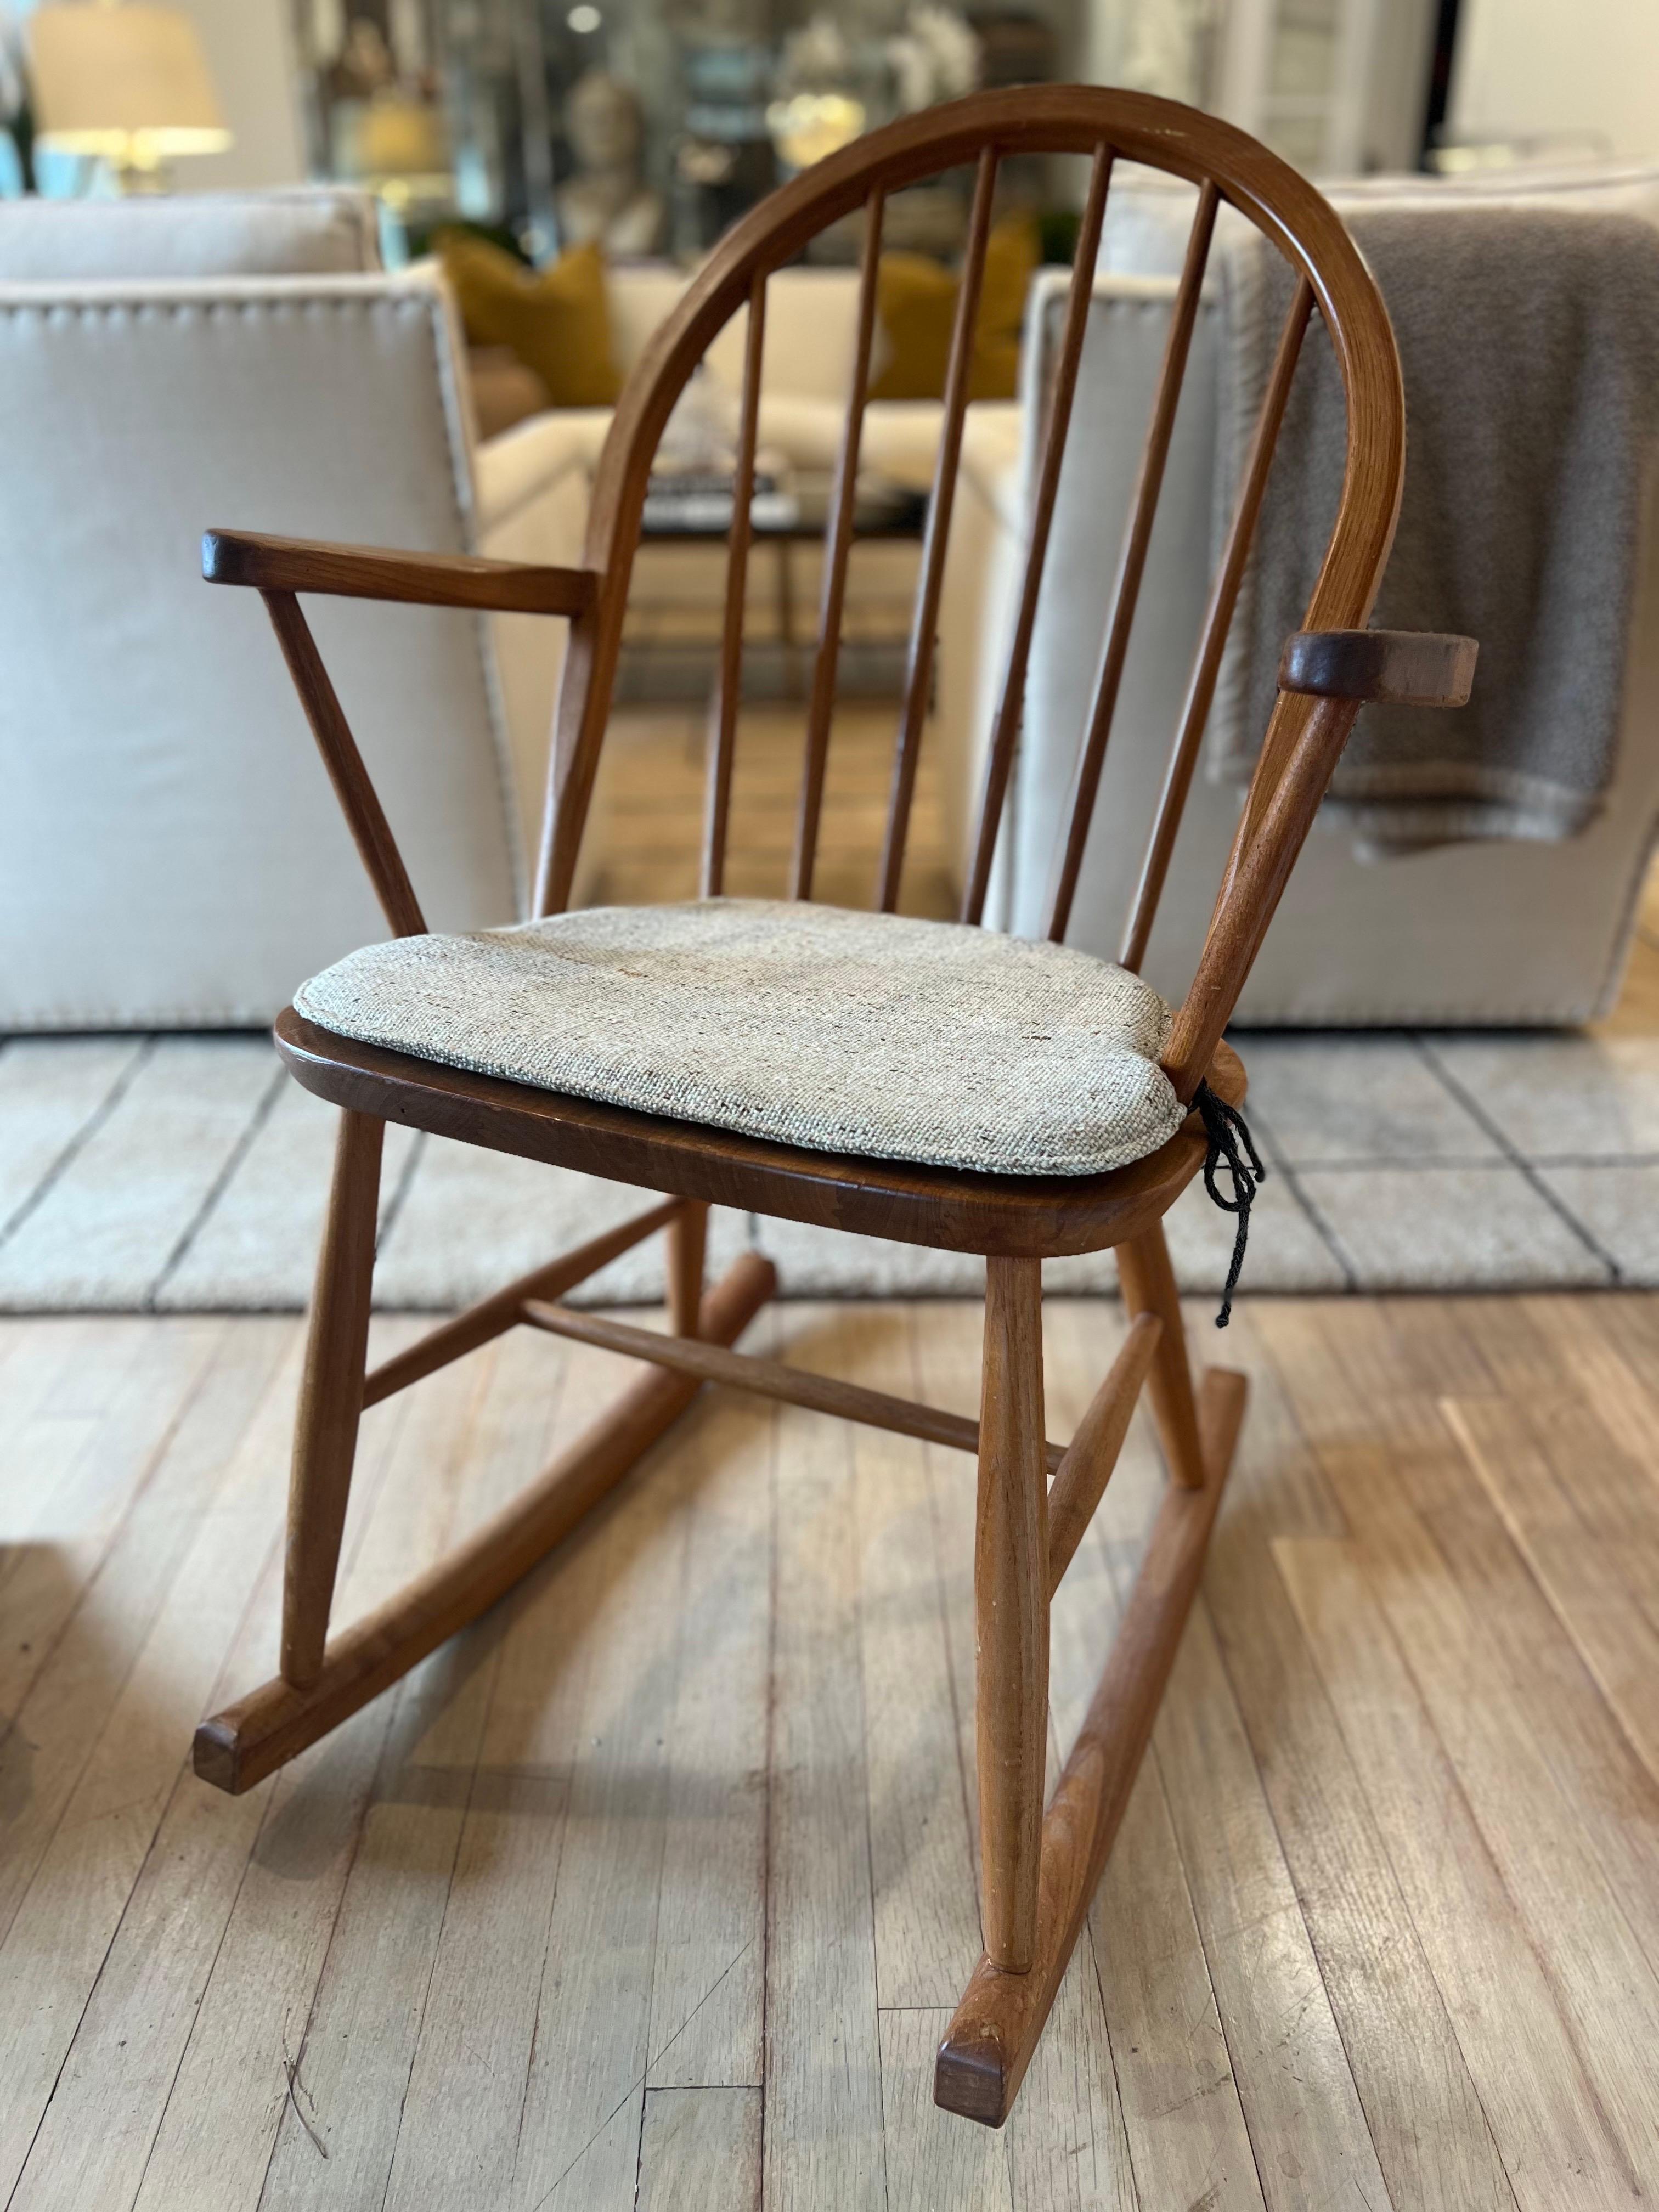 Vintage Jorgensen Dänischer Schaukelstuhl. Kleinerer Maßstab, ideal für eine enge Ecke oder ein Kinderzimmer.

Solide Struktur. Kommt mit Sitzkissen wie auf den Fotos zu sehen.